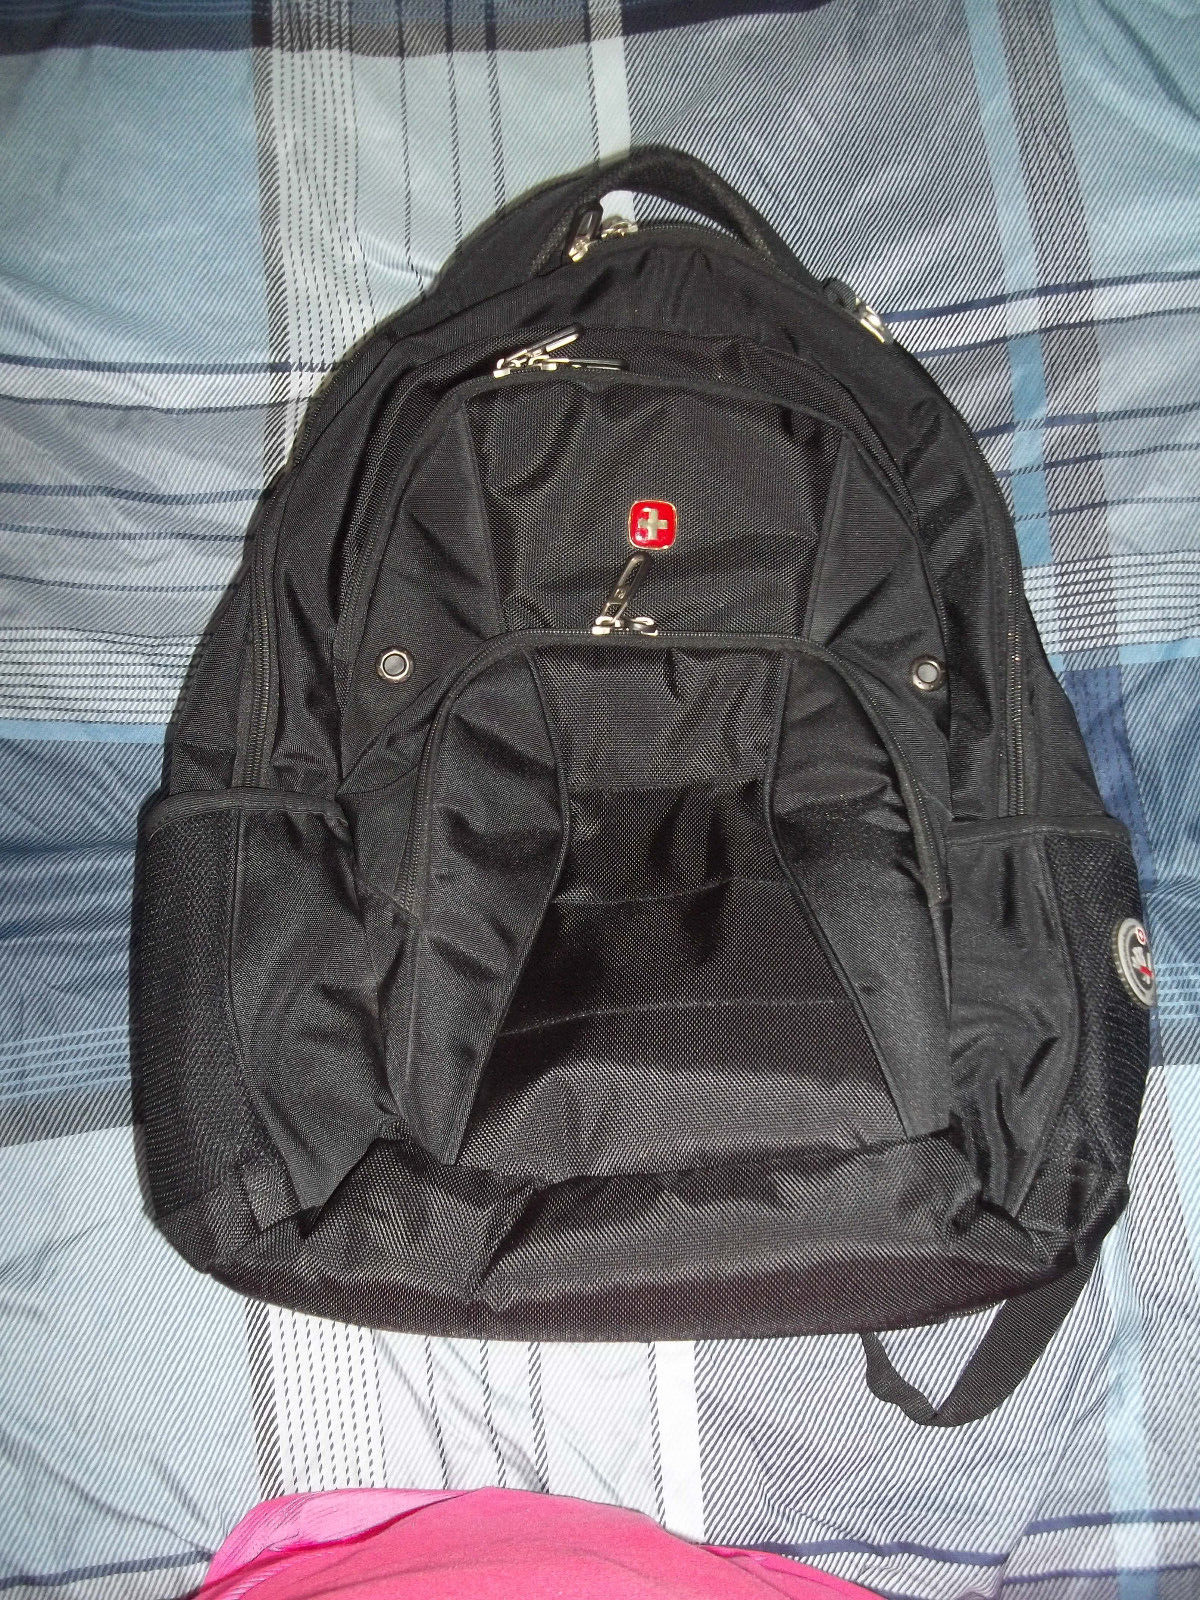 Swiss Gear Black TSA Friendly ScanSmart Laptop Backpack Large EUC